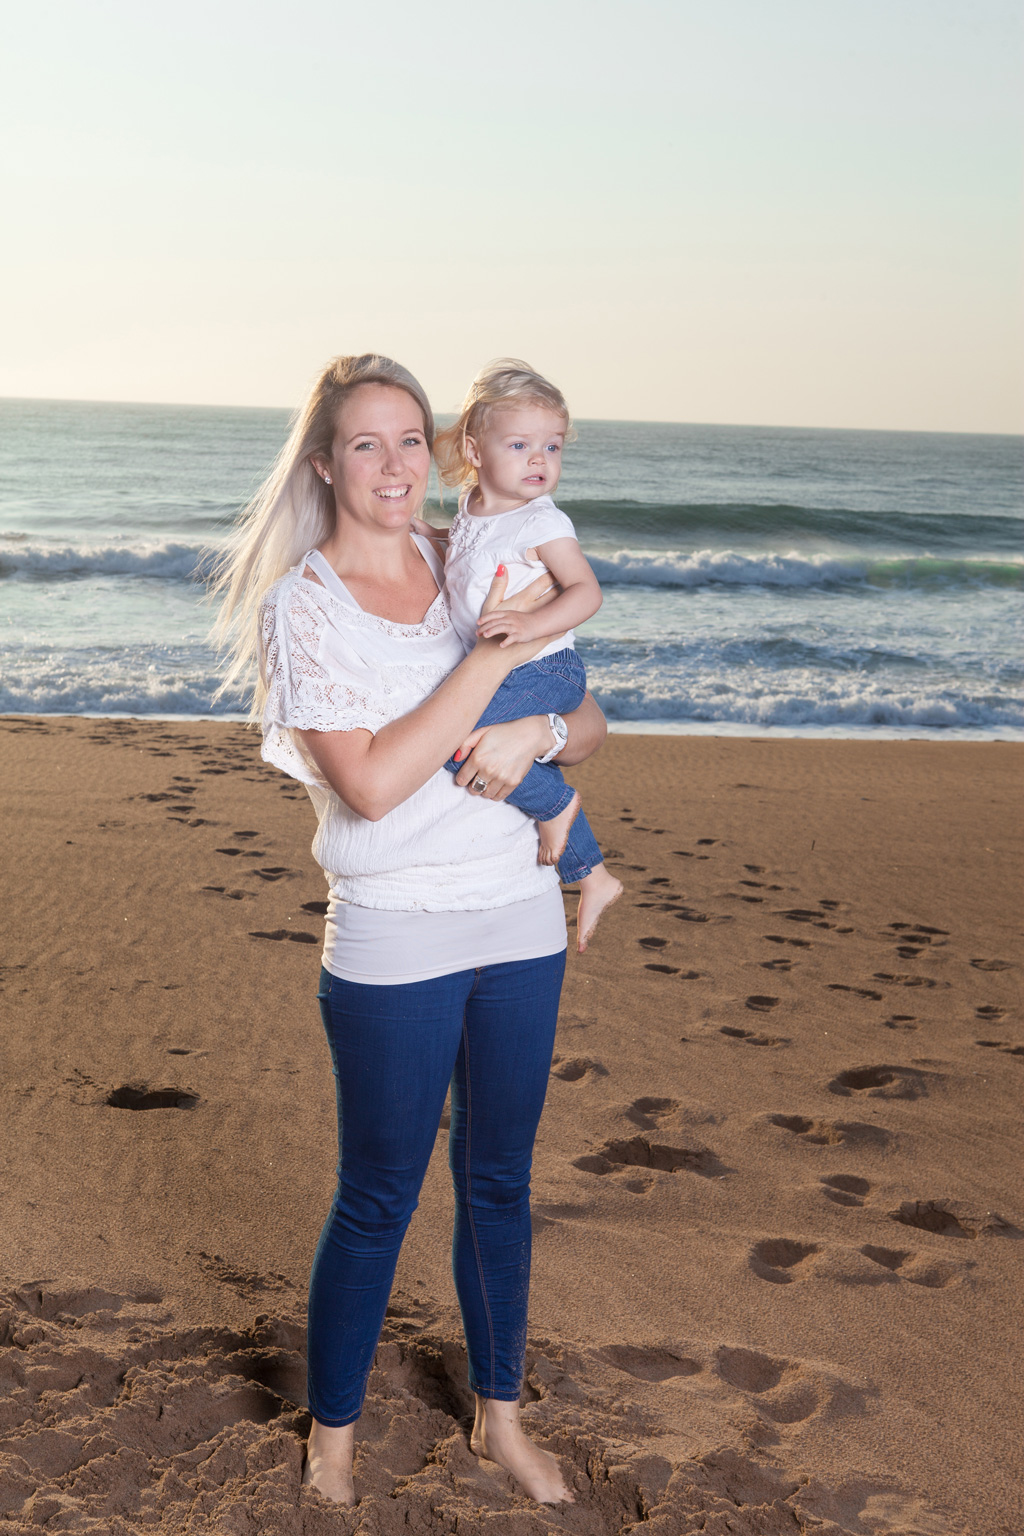 Family Photographer Durban: Nicole & Jono's Family Beach Shoot